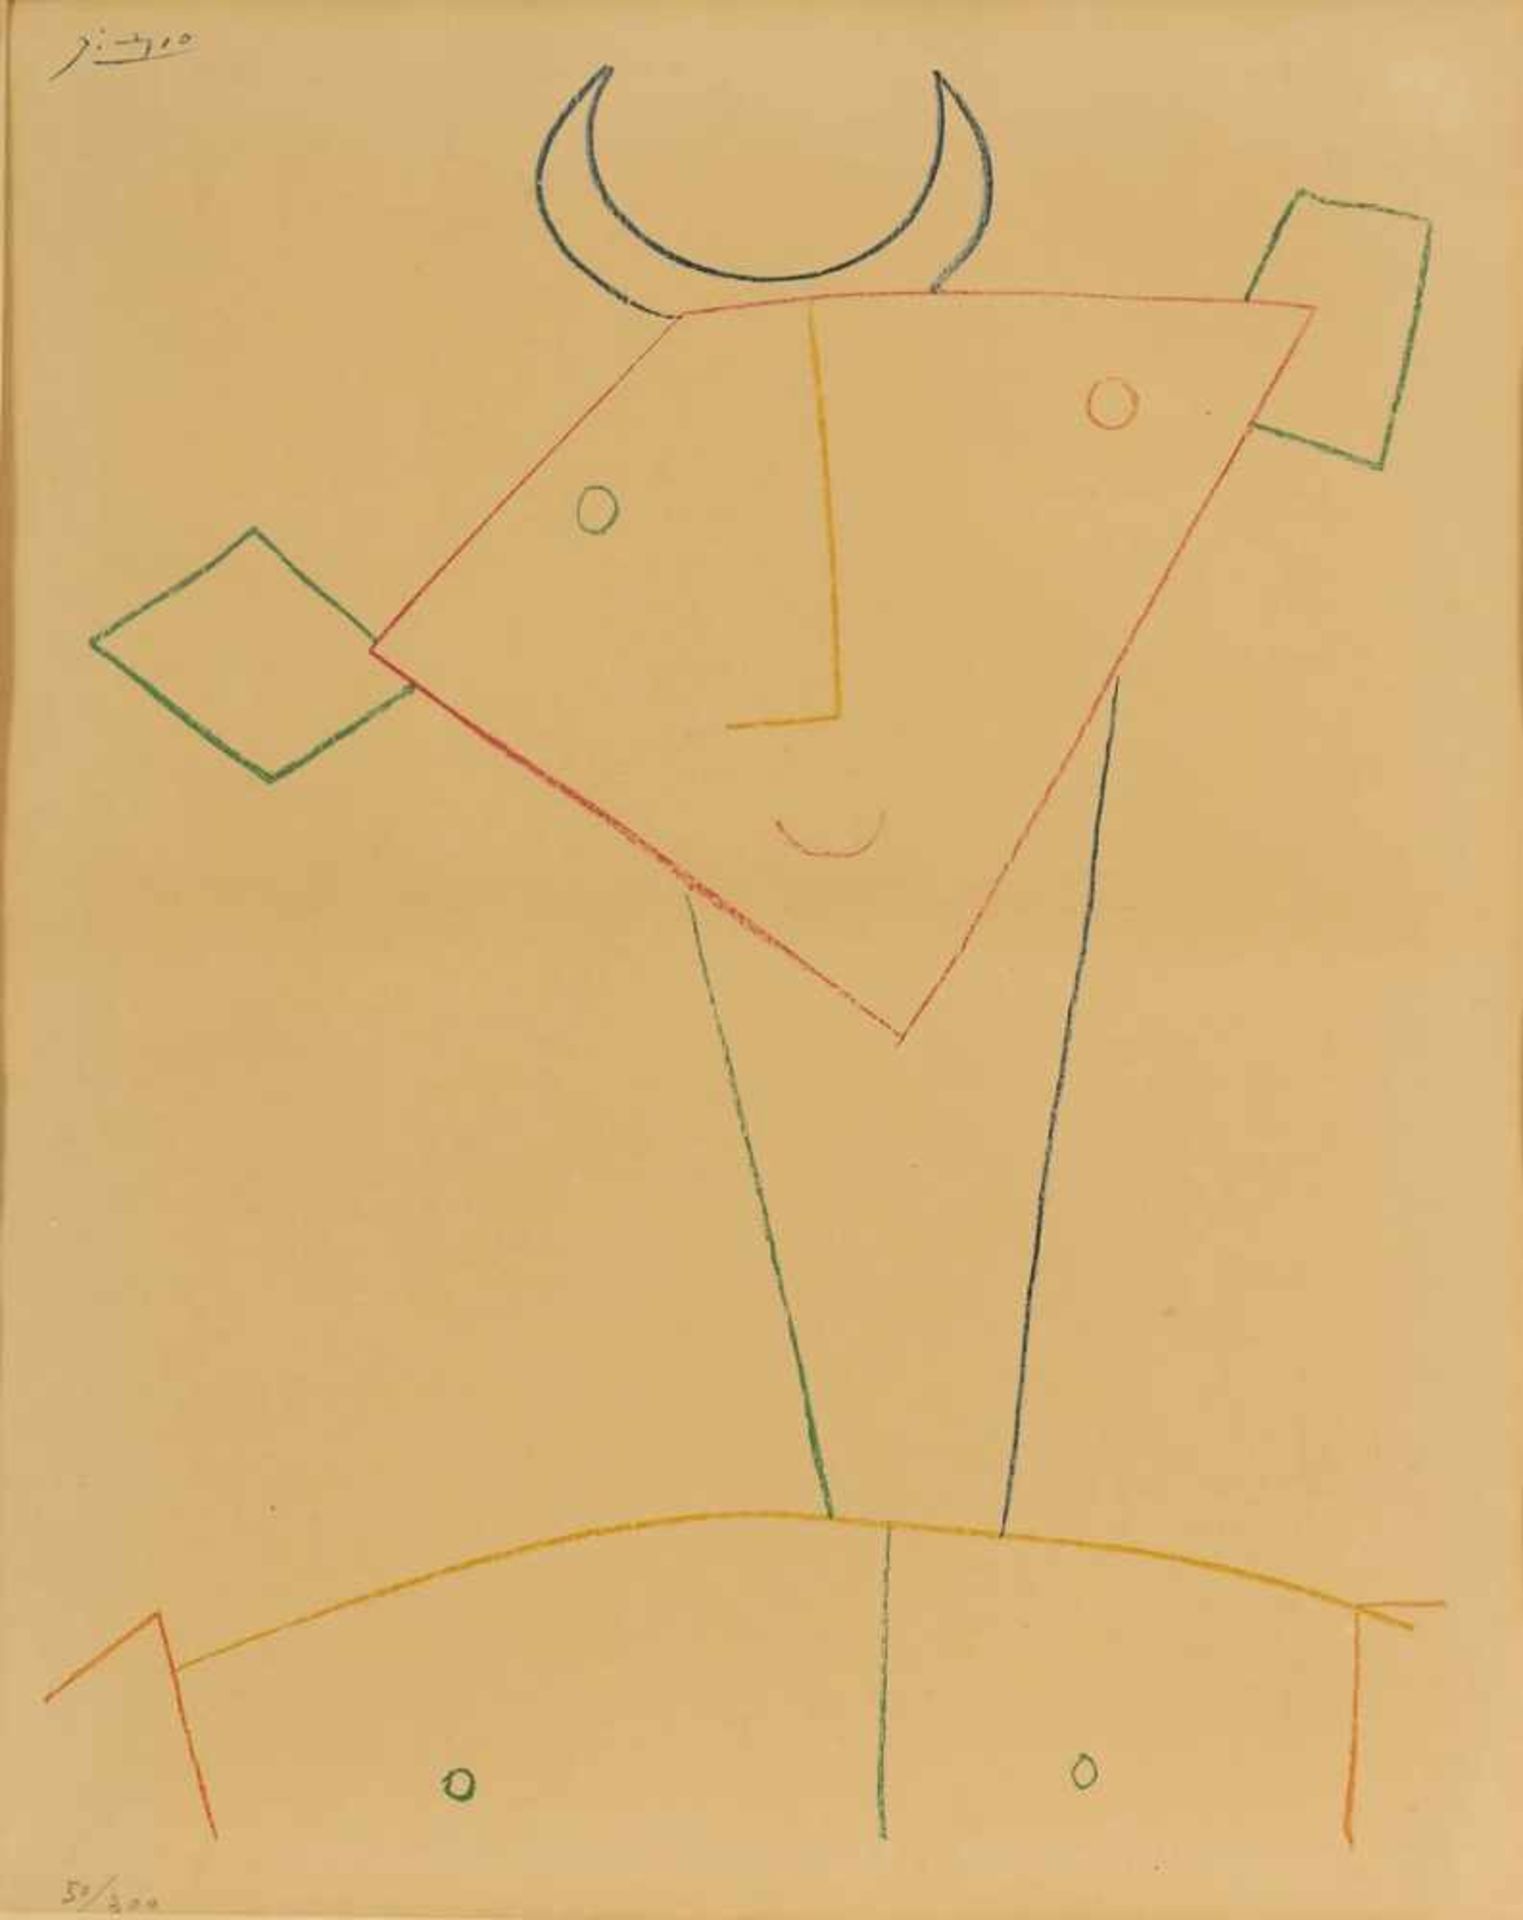 Pablo Picasso 1881 Malaga - 1973 Mougins nach - Tete de Faune - Farblithografie/chamoisfarbenes